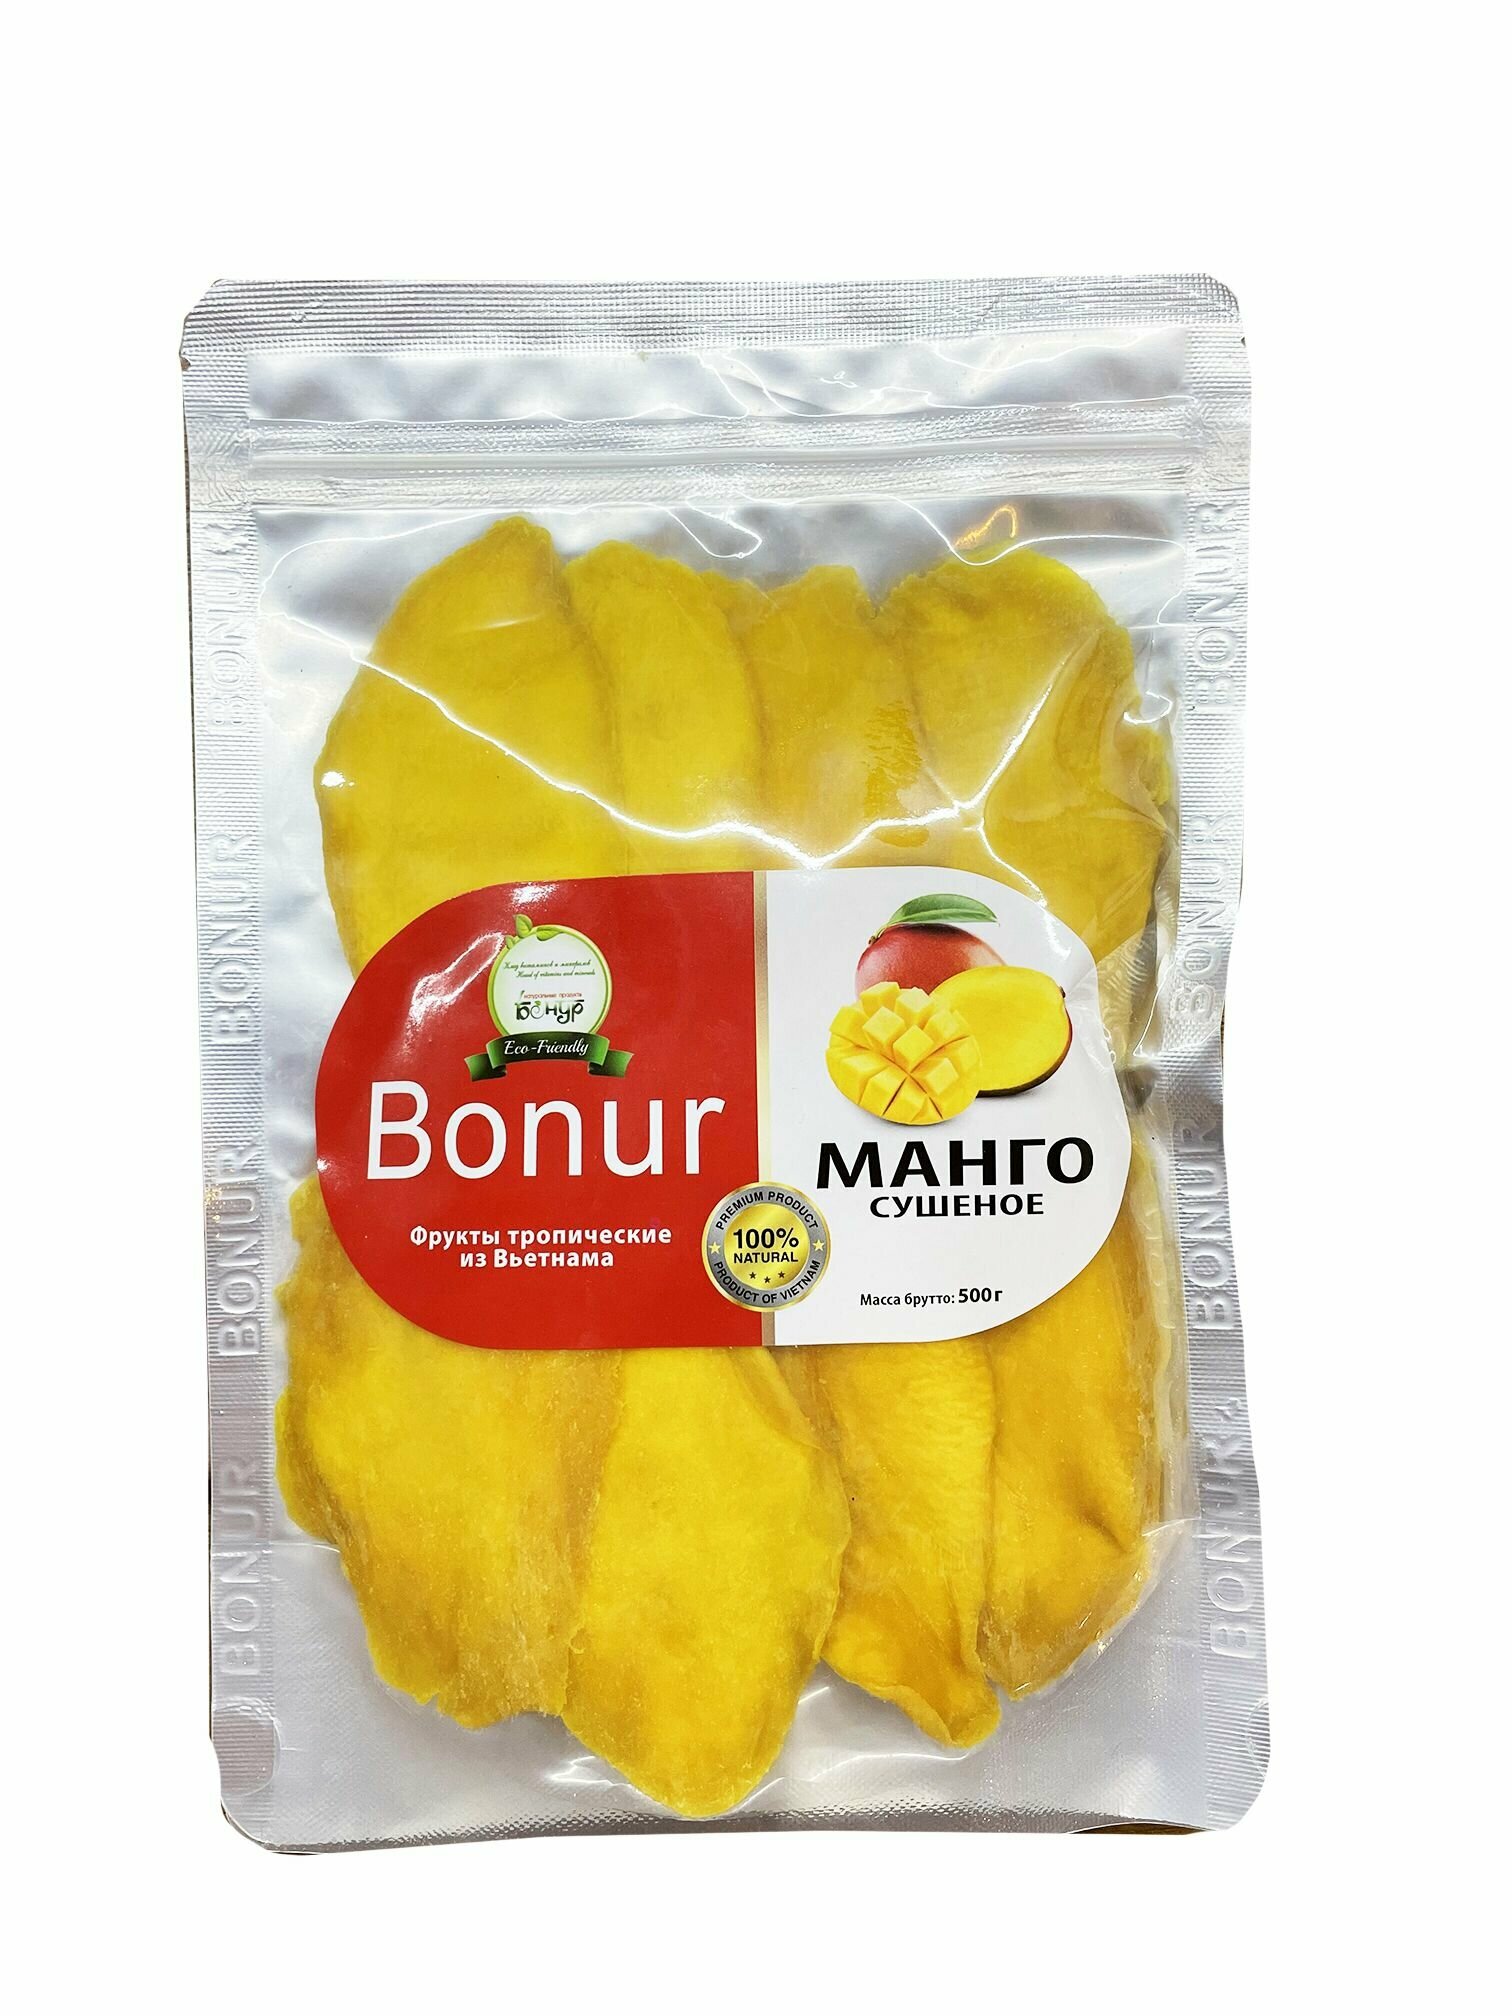 Бонур Манго сушеное Натуральное без сахара 500г Вьетнам